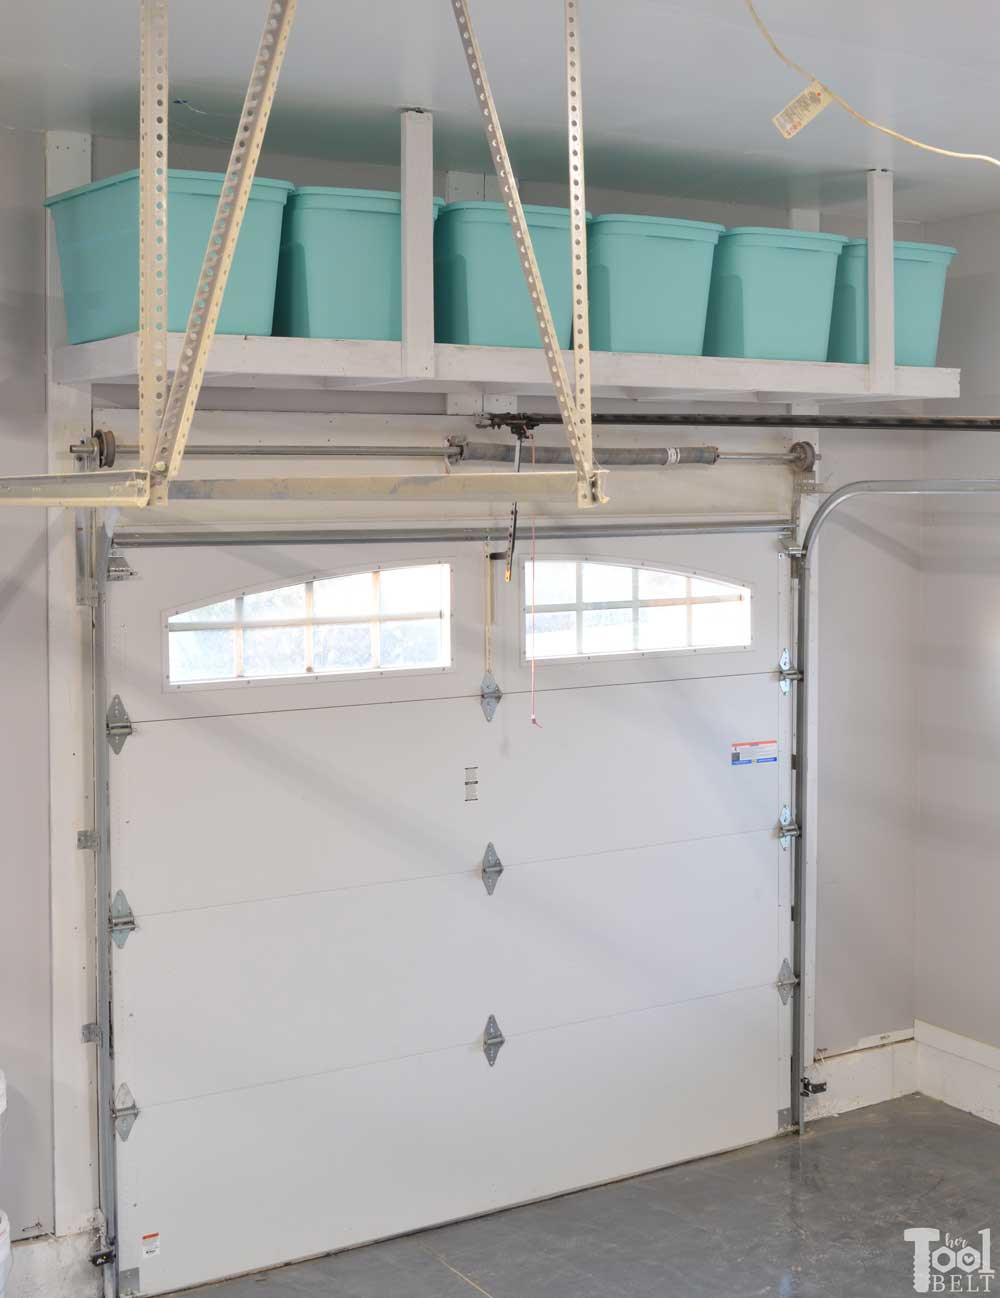 Best ideas about Above Garage Door Storage
. Save or Pin Overhead Garage Storage Shelf Her Tool Belt Now.